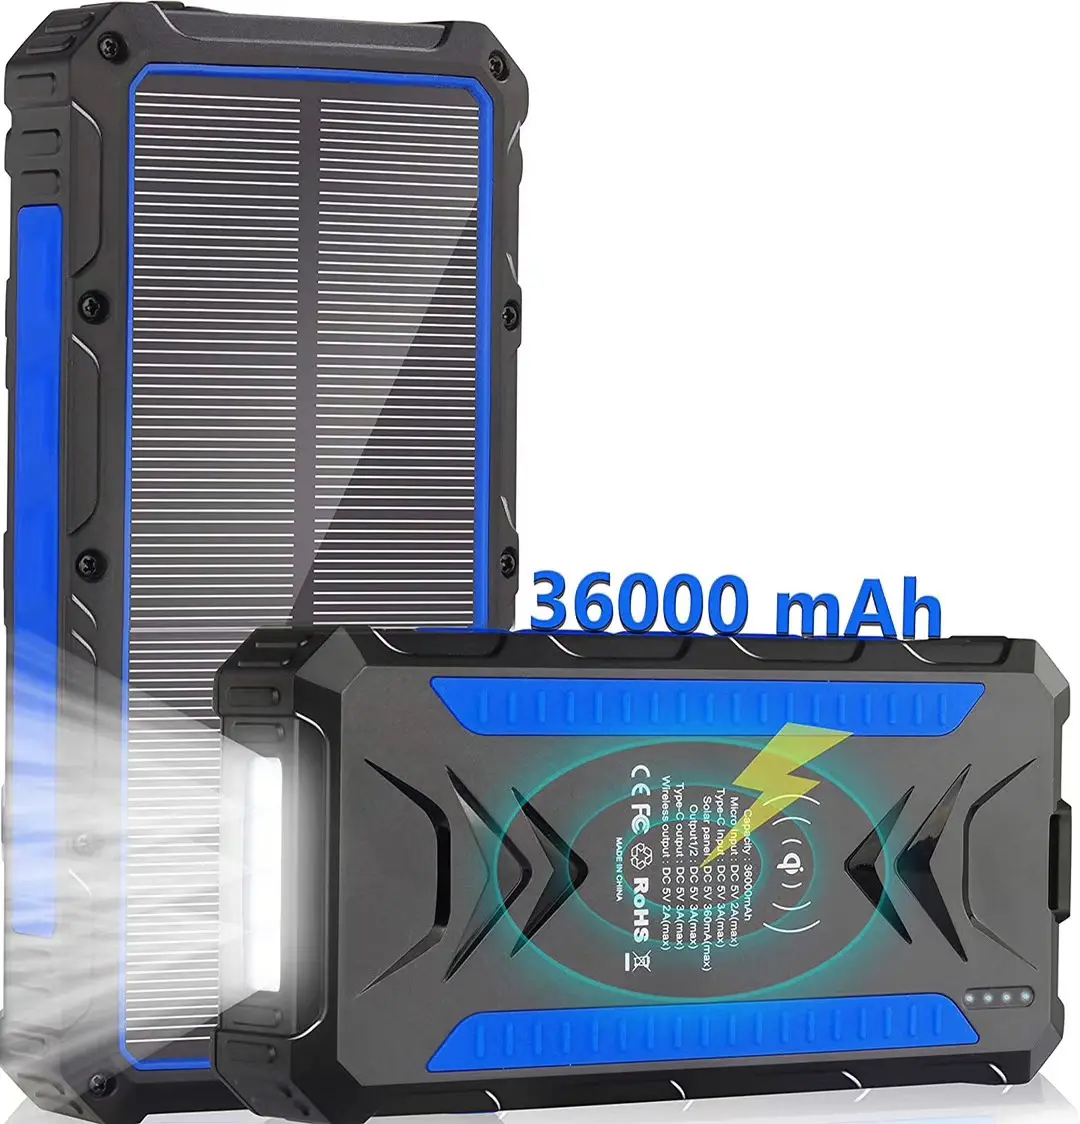 Amazon Quick Selling Hoge Capaciteit 36000Mah Batterij Qi Solar Power Bank Snelle Oplader Voor Mobiele Telefoon Draadloze